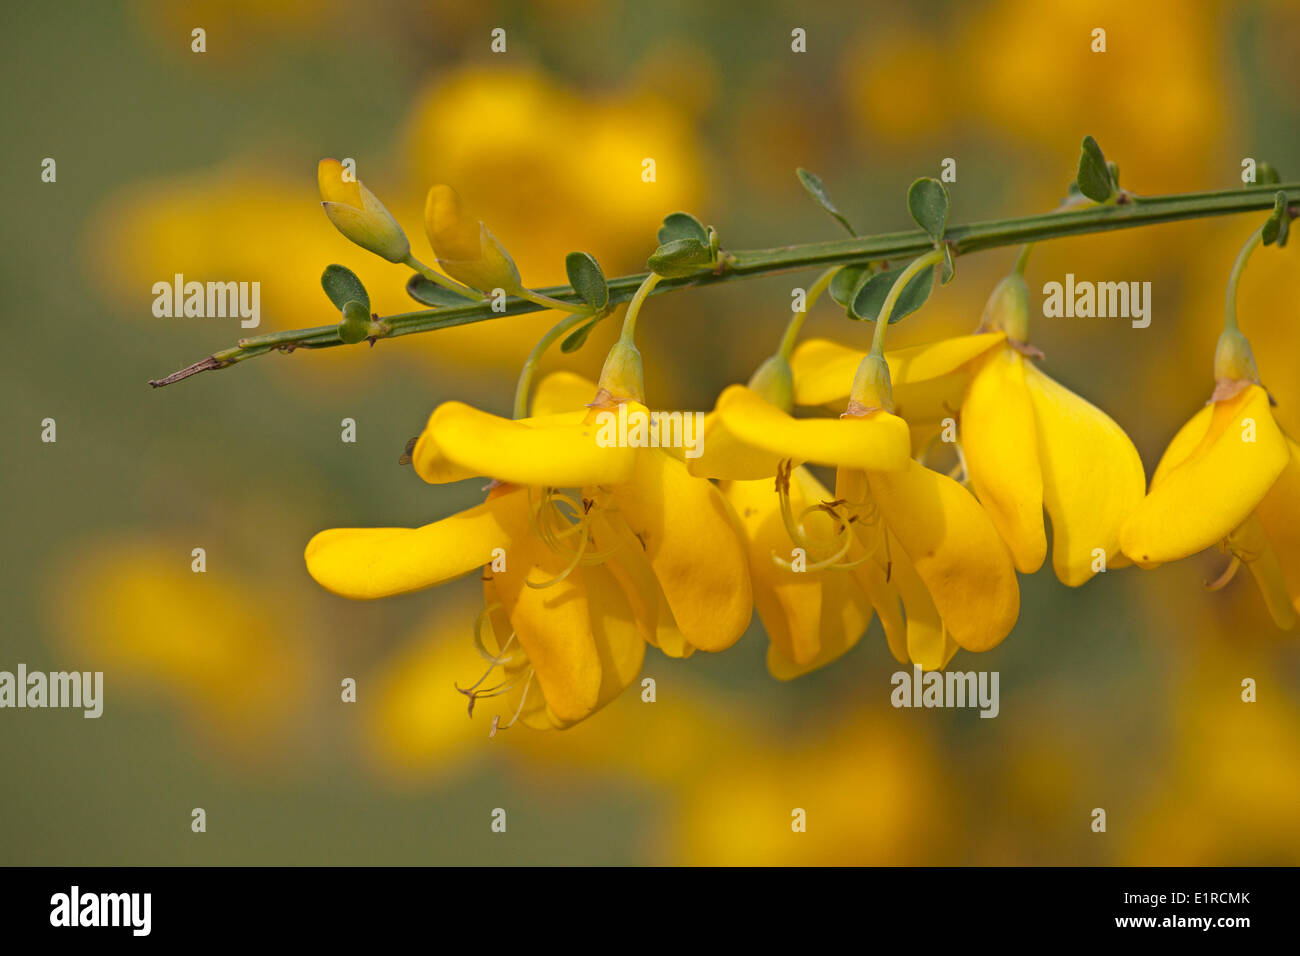 Foto de escoba común con flores de color amarillo en el fondo común de la barredora Foto de stock